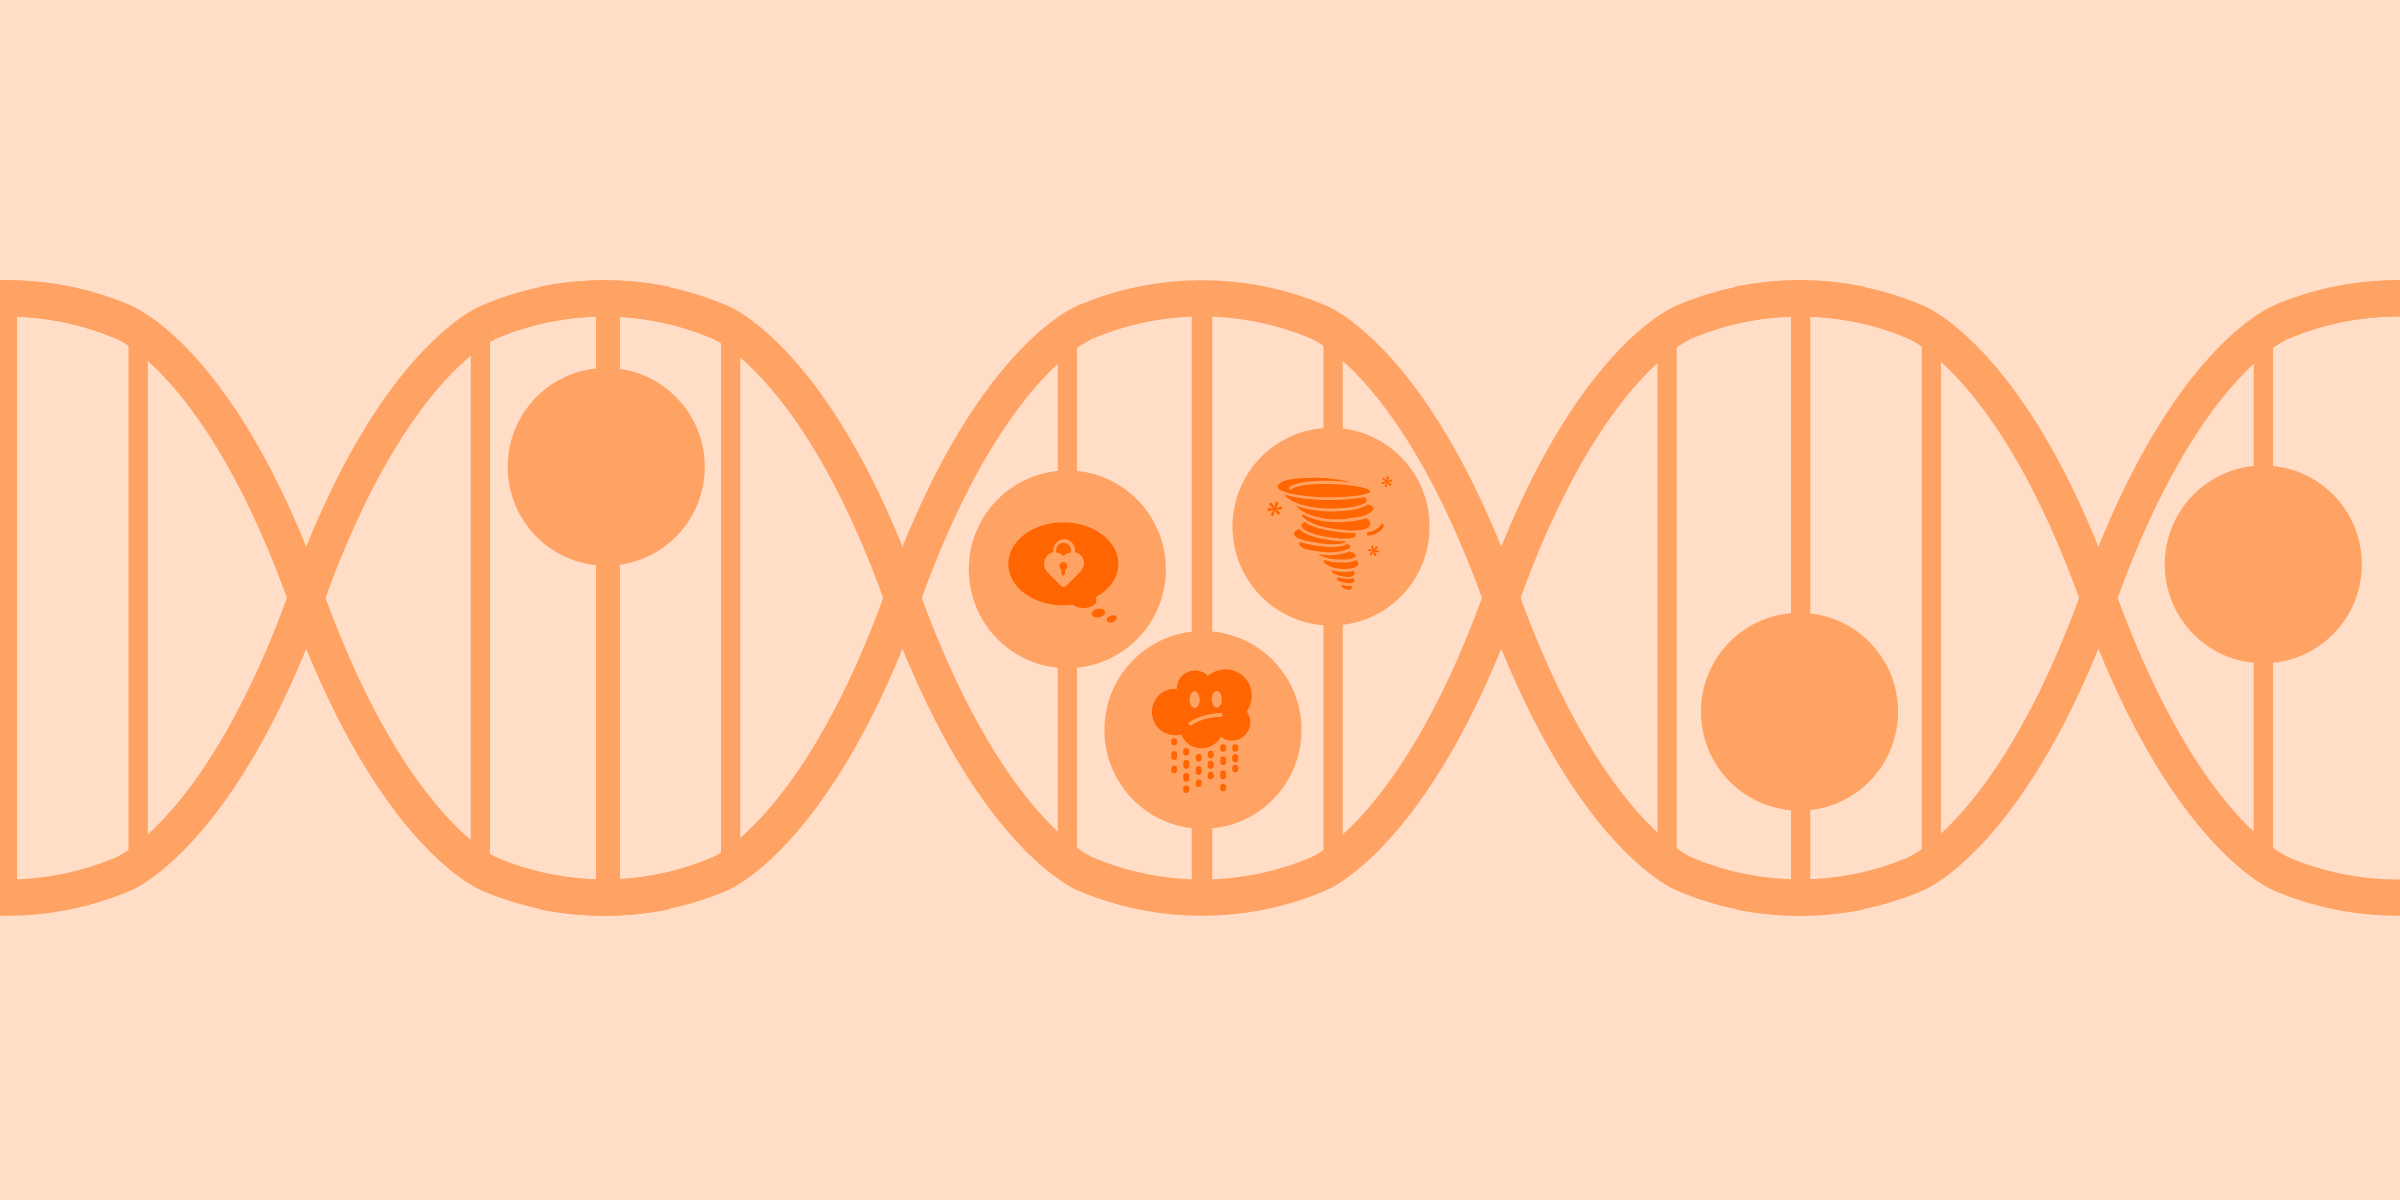 Zoomez sur l'ADN, avec certaines des icônes d'ambiance Clue à l'intérieur des cellules. Illustration dans les tons orange.